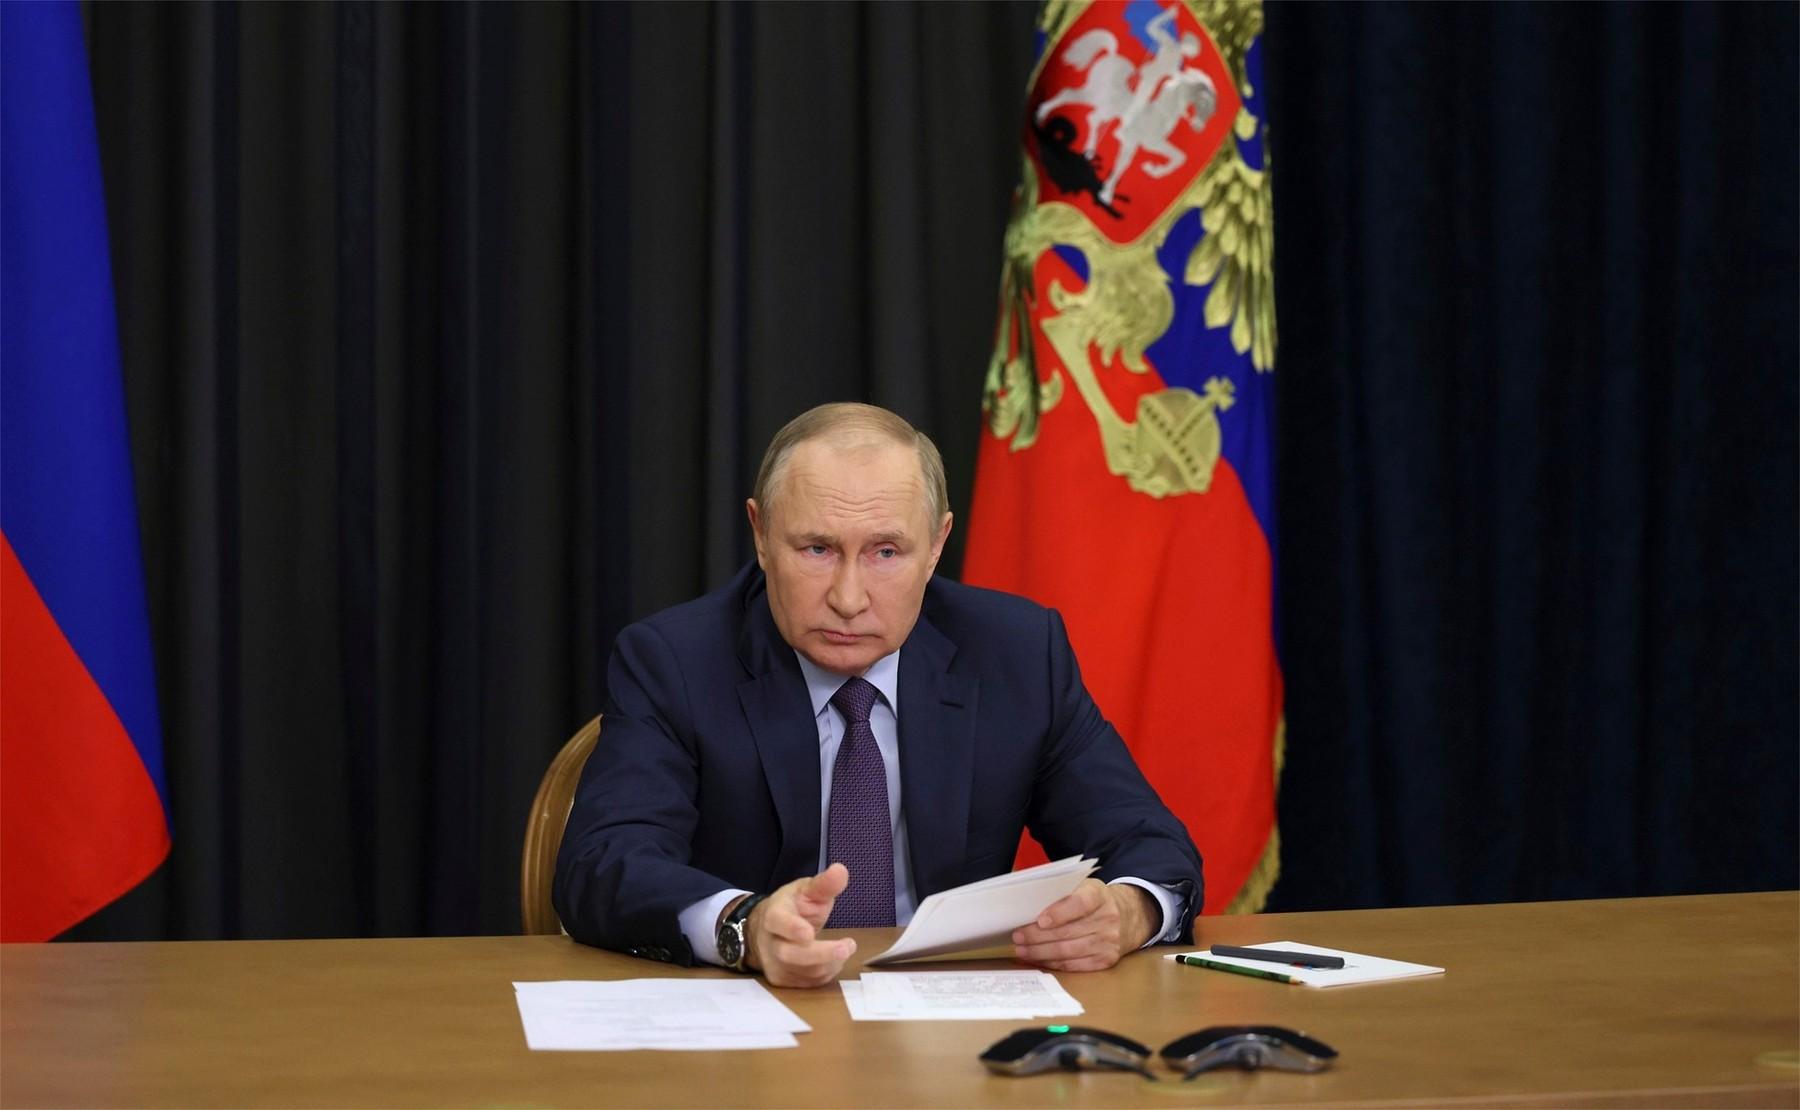 Vladimir Putin, președintele Federației Ruse